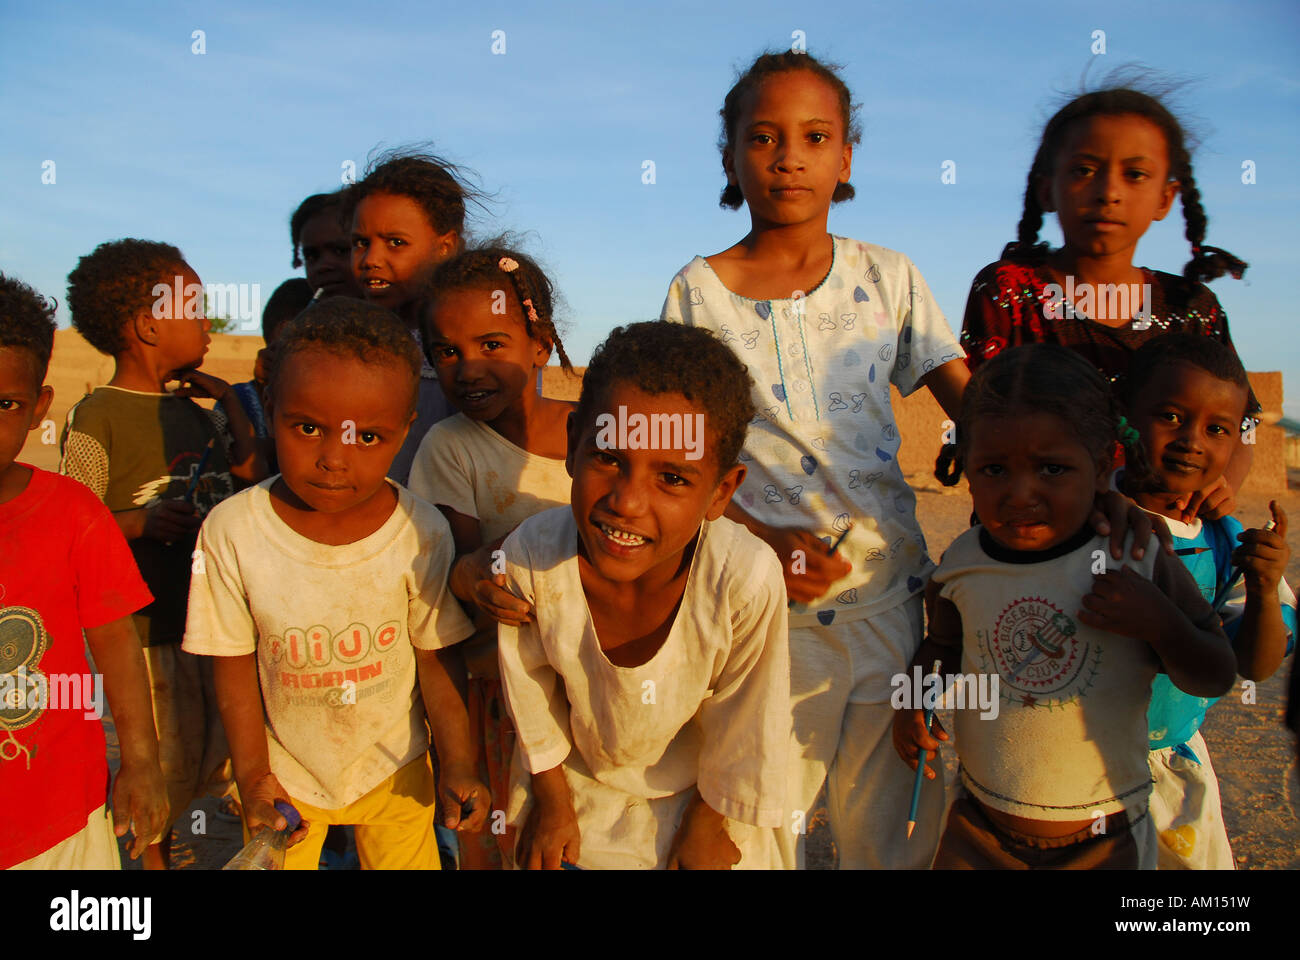 Children, El Kurru, Sudan Stock Photo